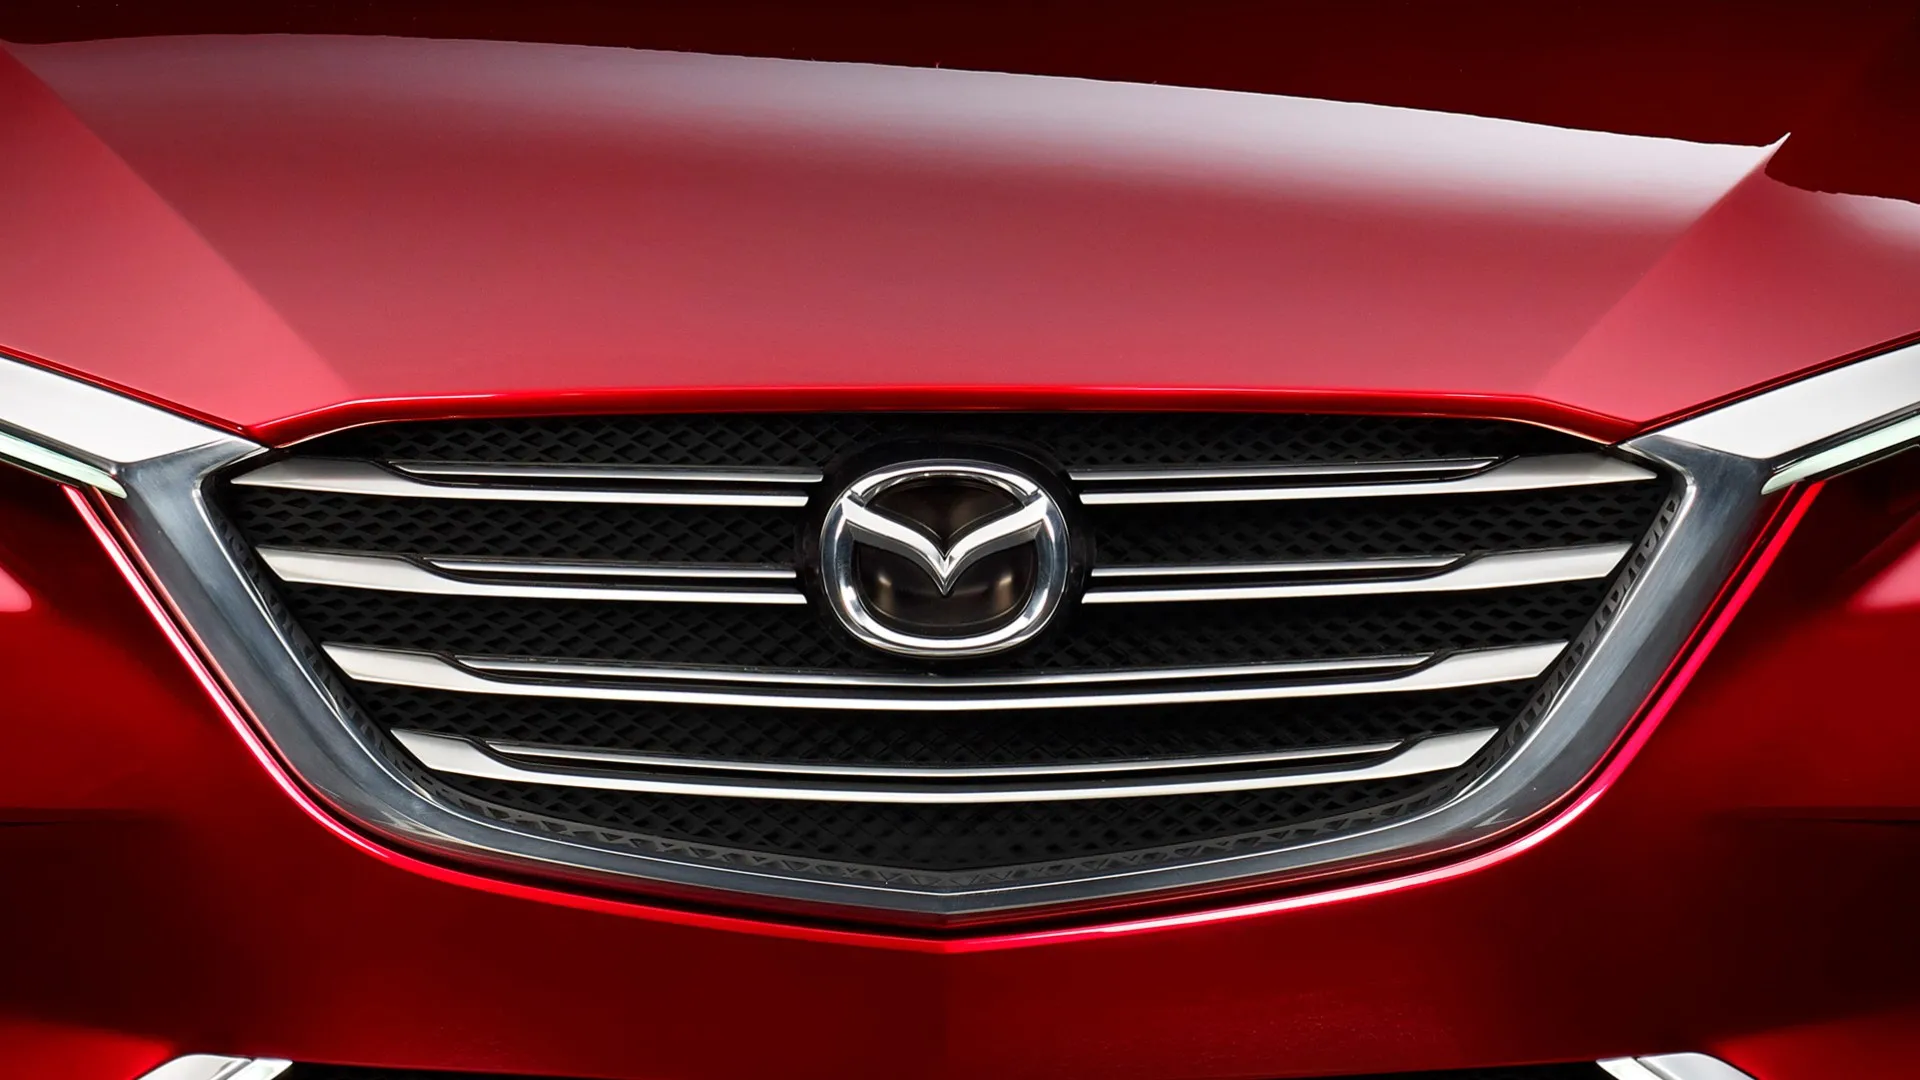 Propulsión y motores de seis cilindros, Mazda prepara novedades interesantes